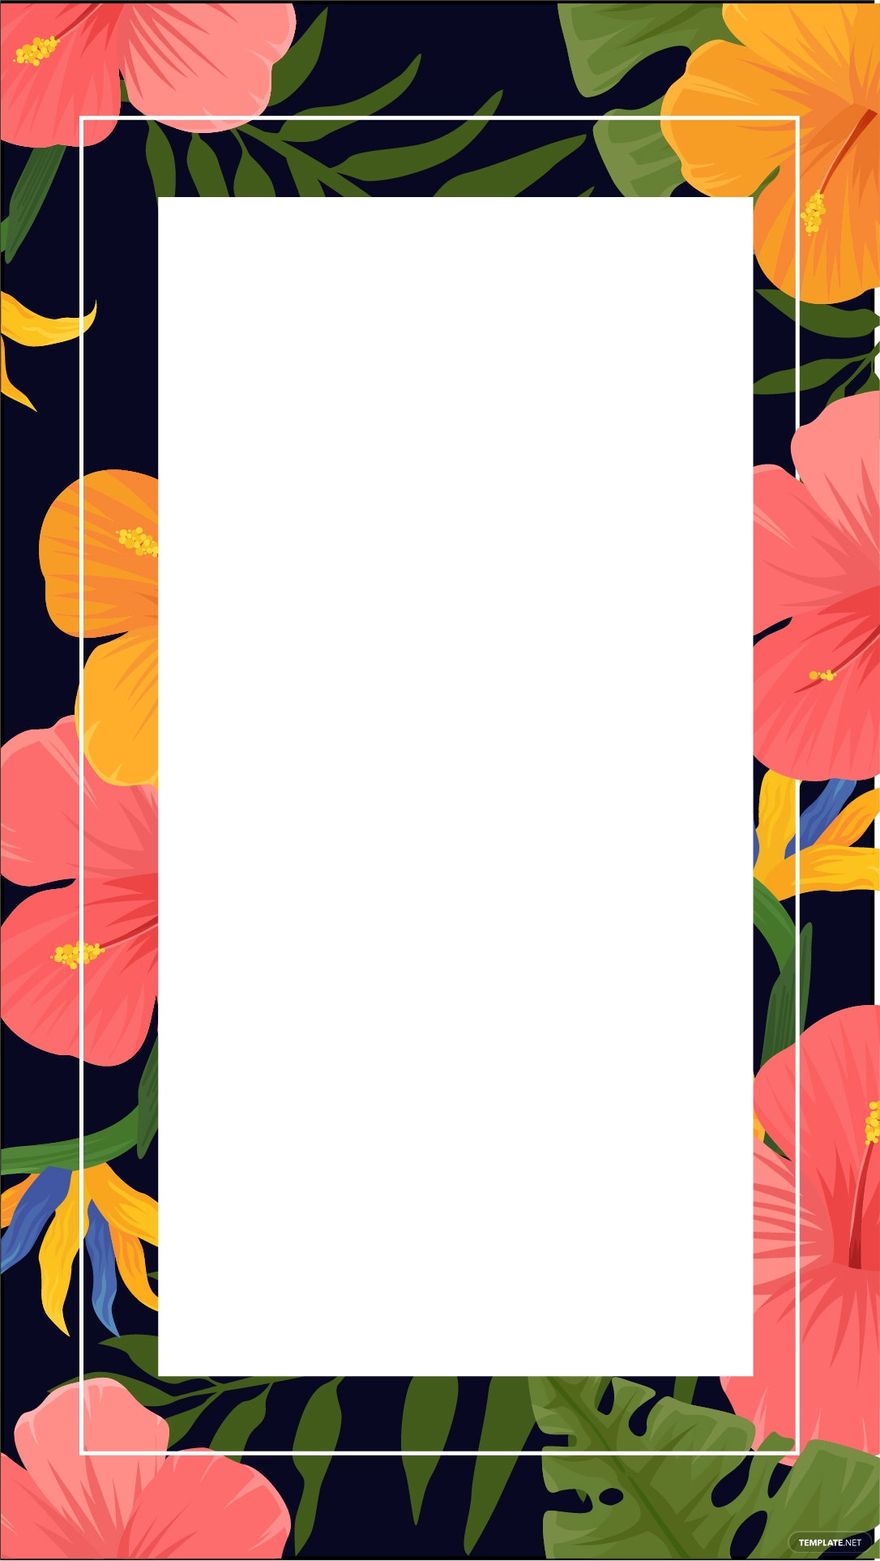 Tropical Invitation Floral Background in Illustrator, EPS, SVG, JPG